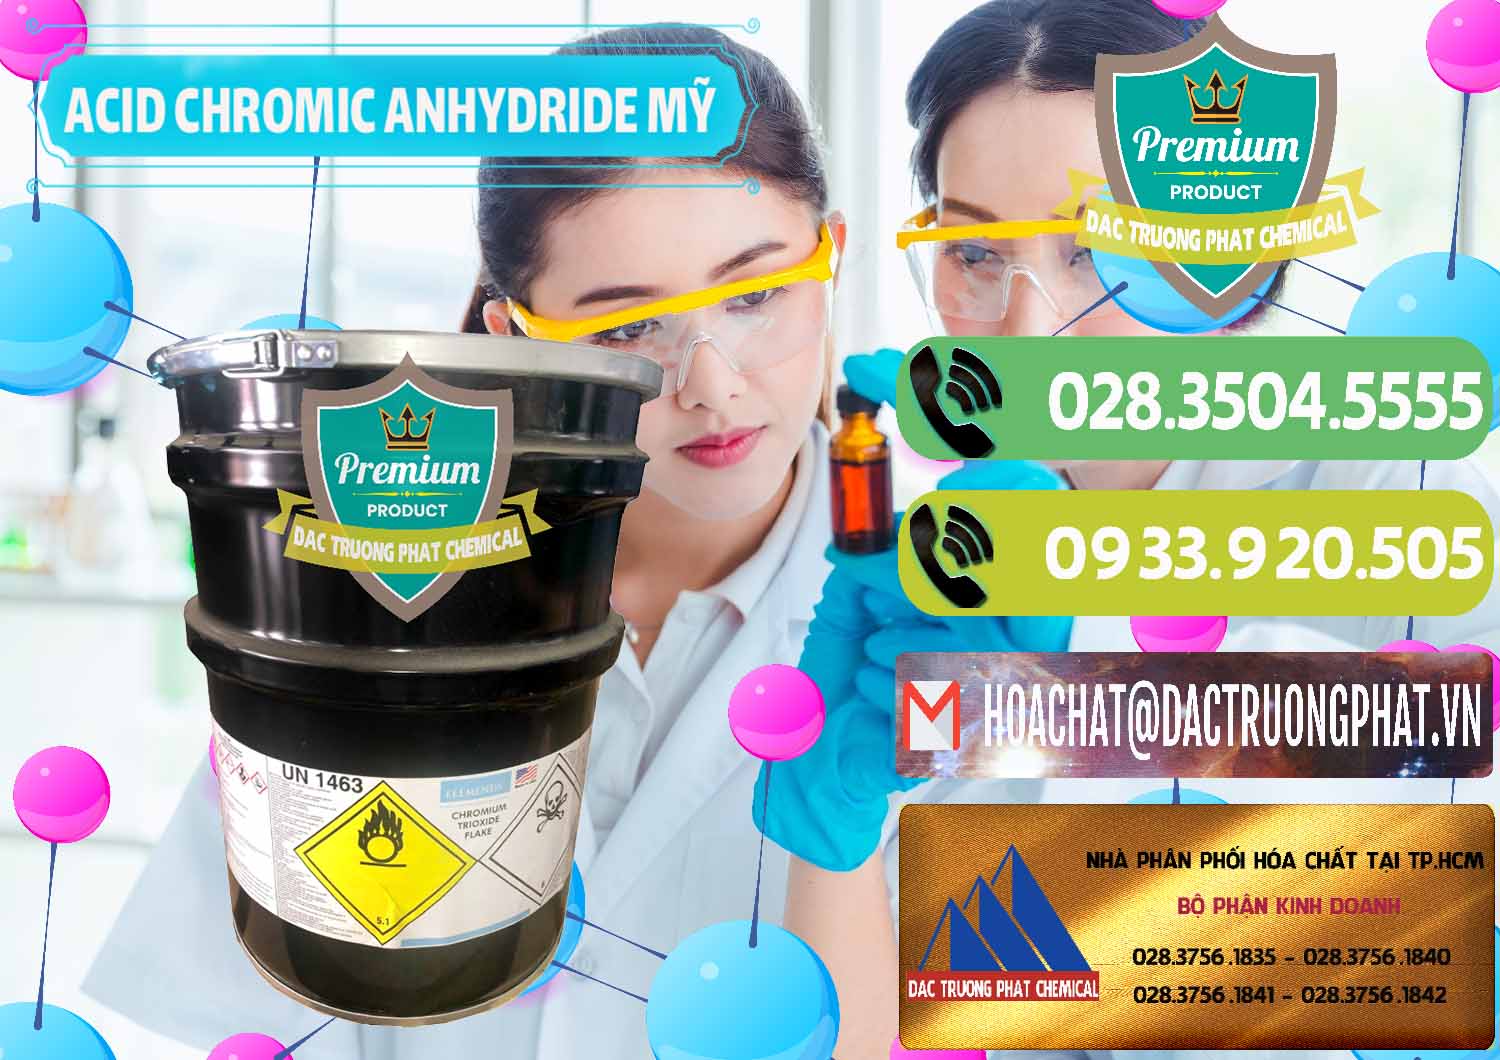 Nơi cung cấp ( bán ) Acid Chromic Anhydride - Cromic CRO3 USA Mỹ - 0364 - Công ty chuyên kinh doanh _ phân phối hóa chất tại TP.HCM - hoachatmientay.vn